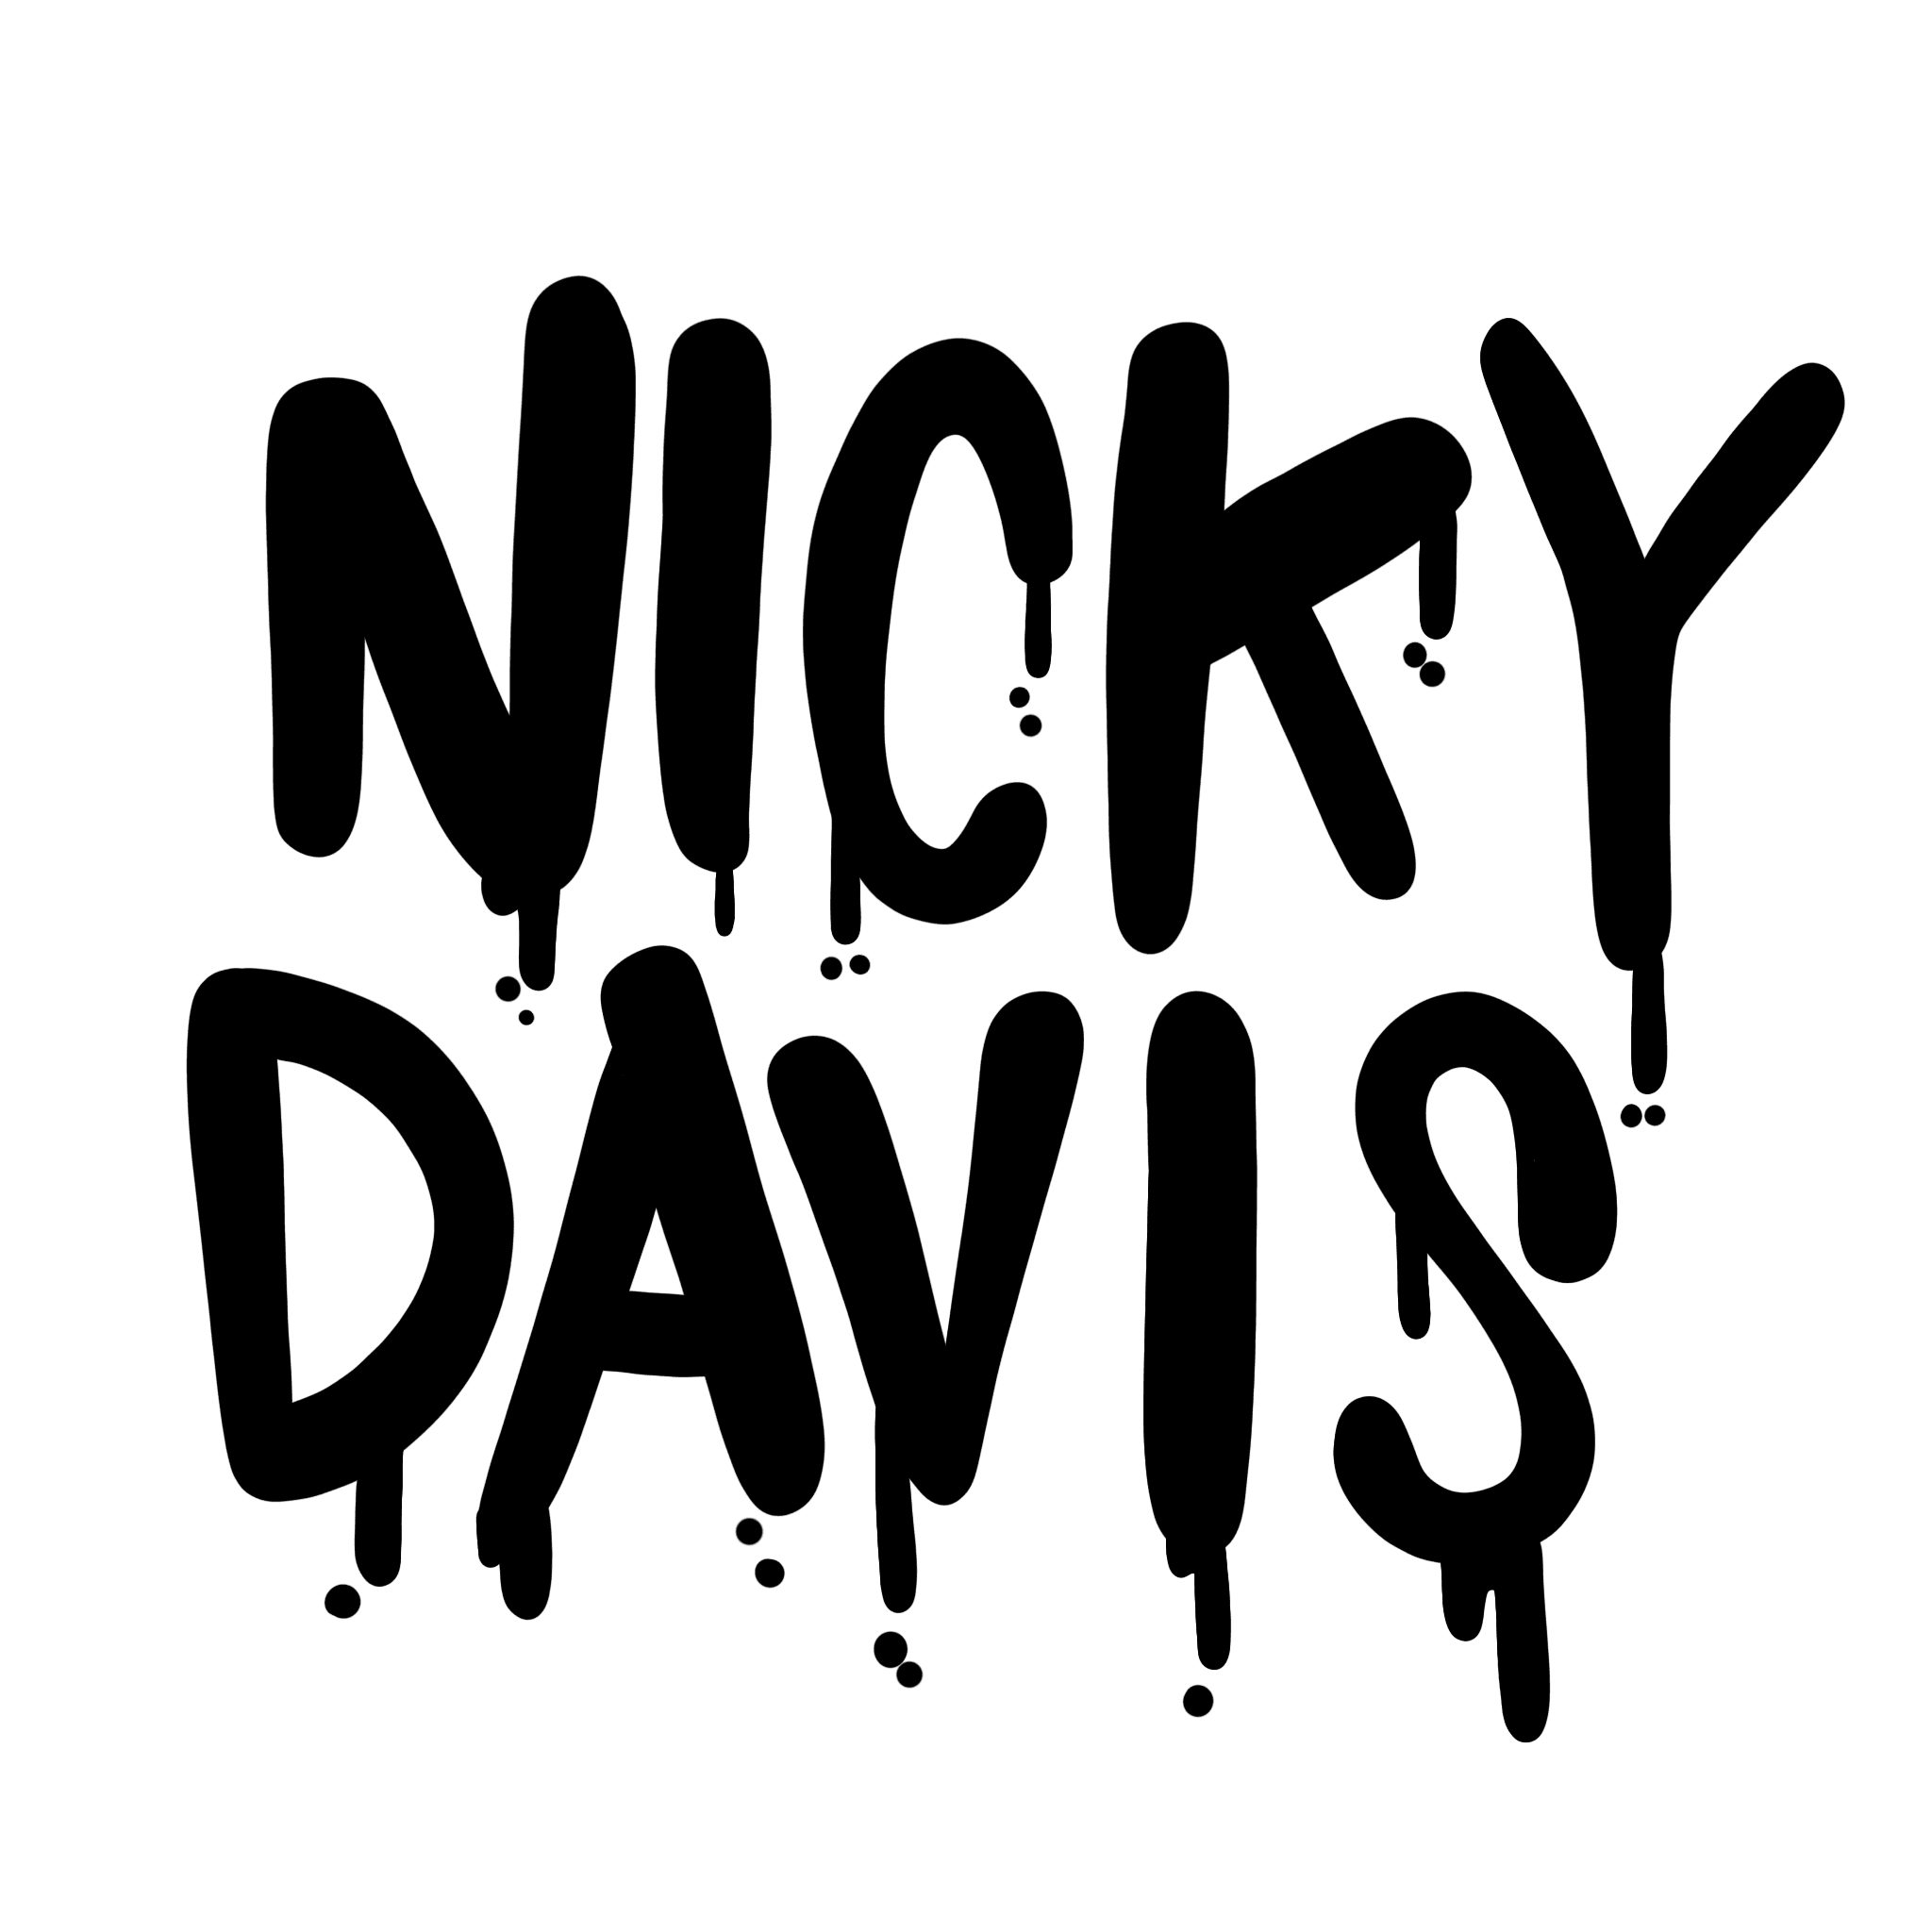 NickyDavis